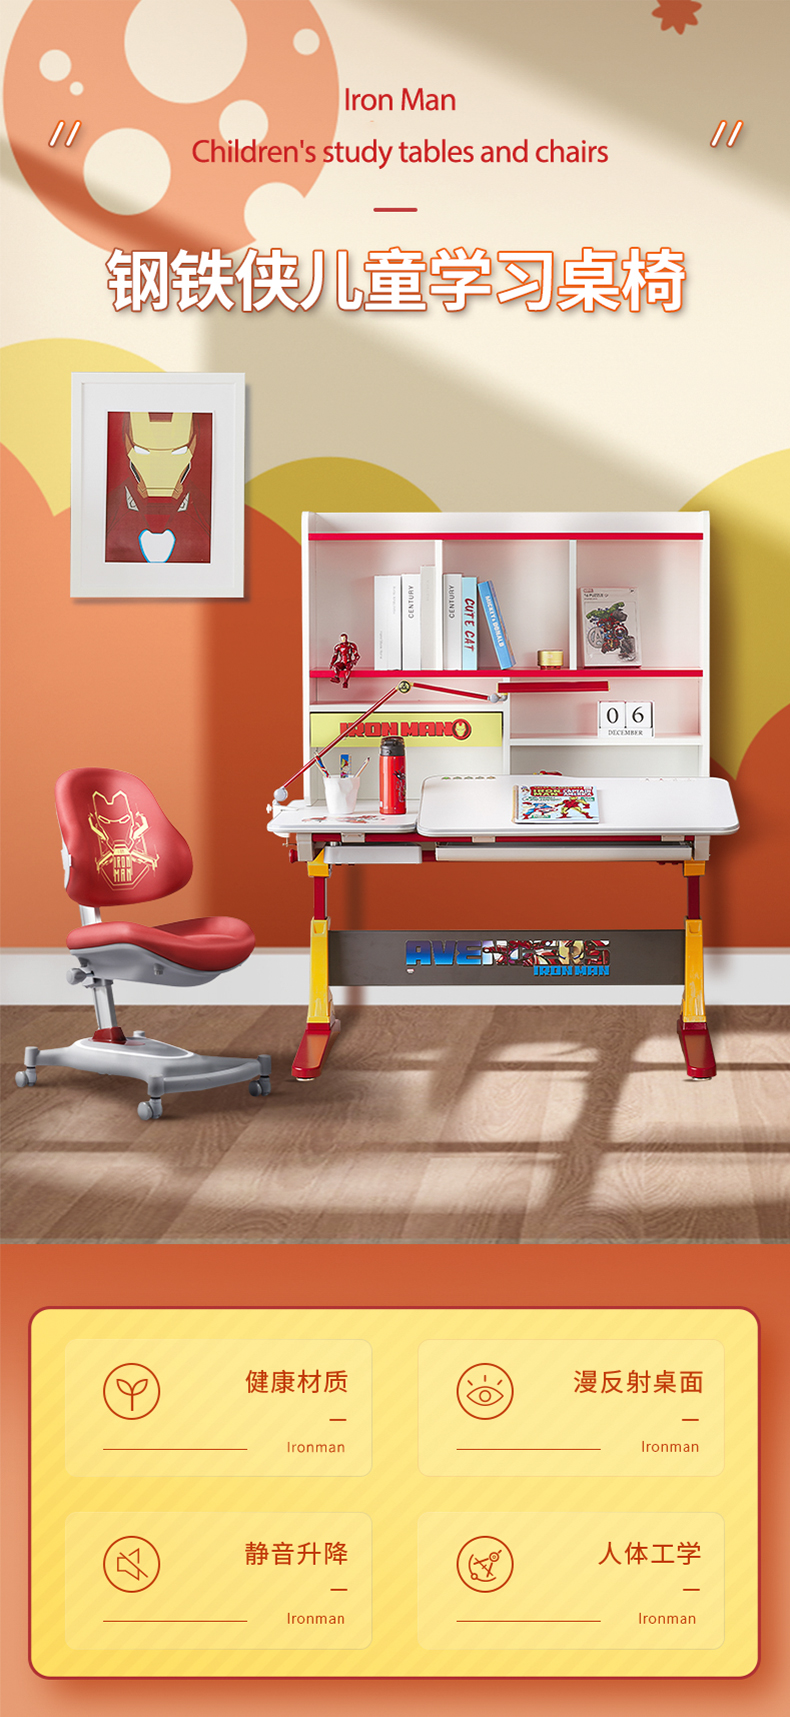 幸福果 迪士尼钢铁侠联名款儿童学习桌90*73cm 含书架&儿童坐椅套装